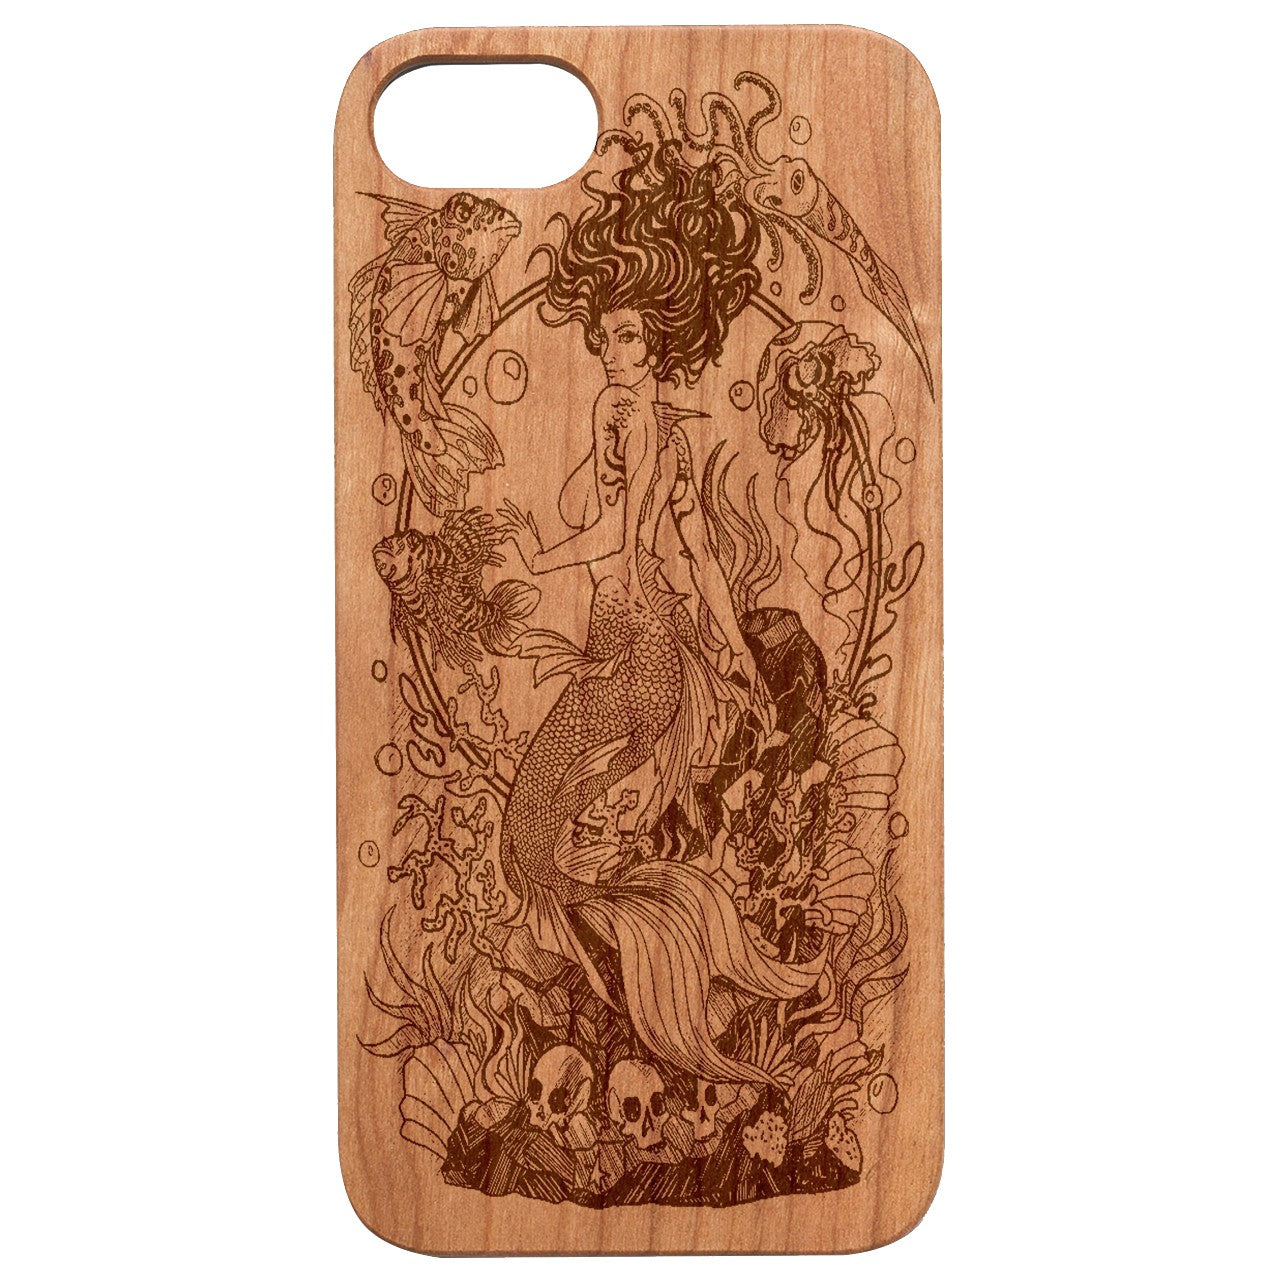  Mermaid 2 - Engraved - Wooden Phone Case - IPhone 13 Models